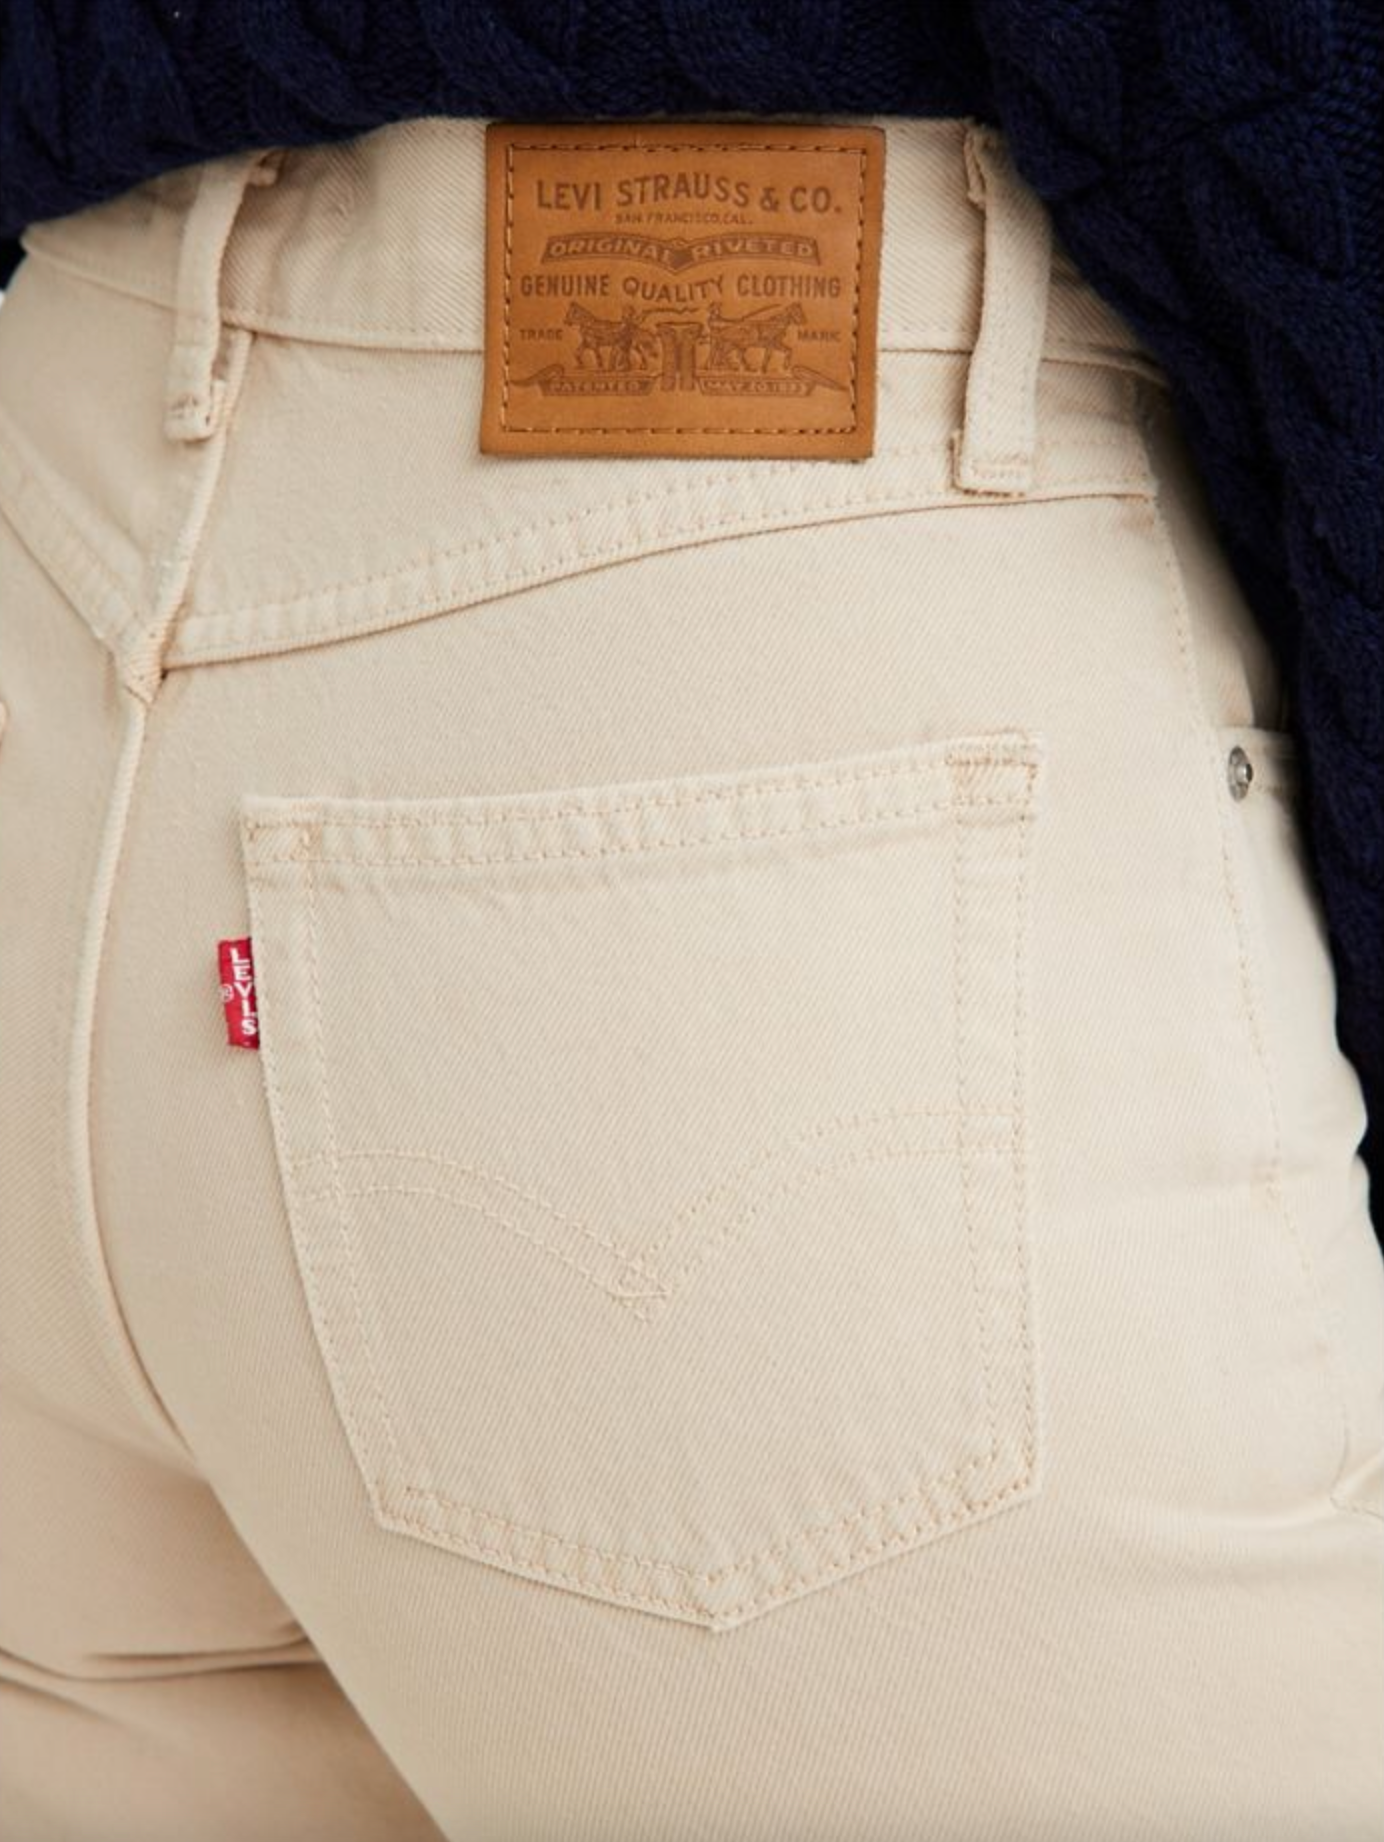 LEVI'S ® Tapered Jeans '80s Mom Jean' in Dark Blue